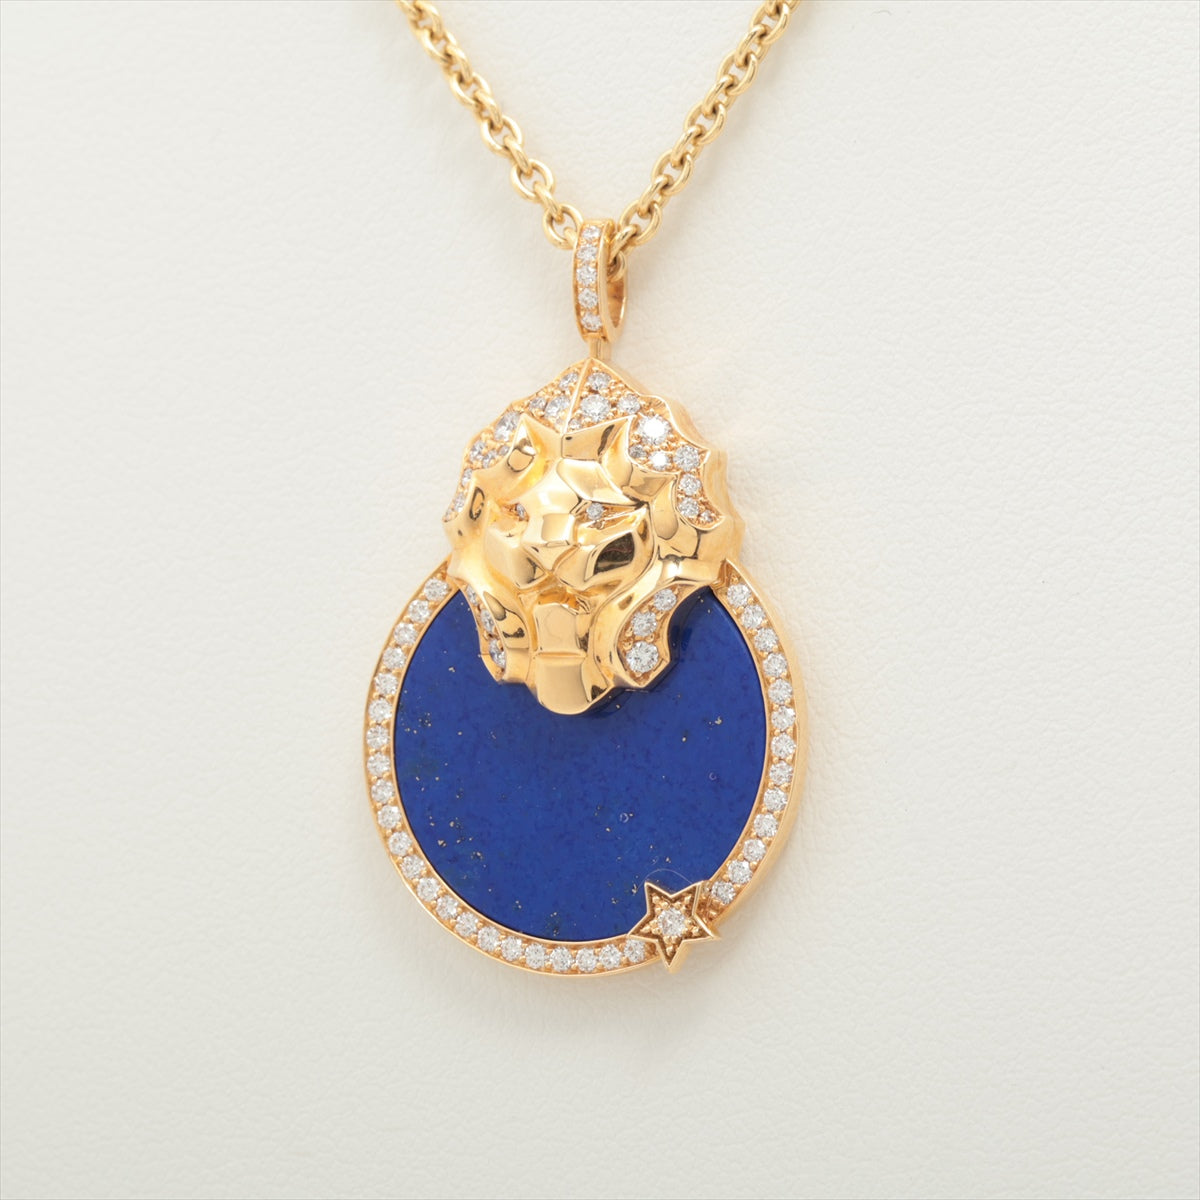 Chanel Sur Chignes Du Rion Lapis lazuli Diamond Necklace 750(YG) 13.1g